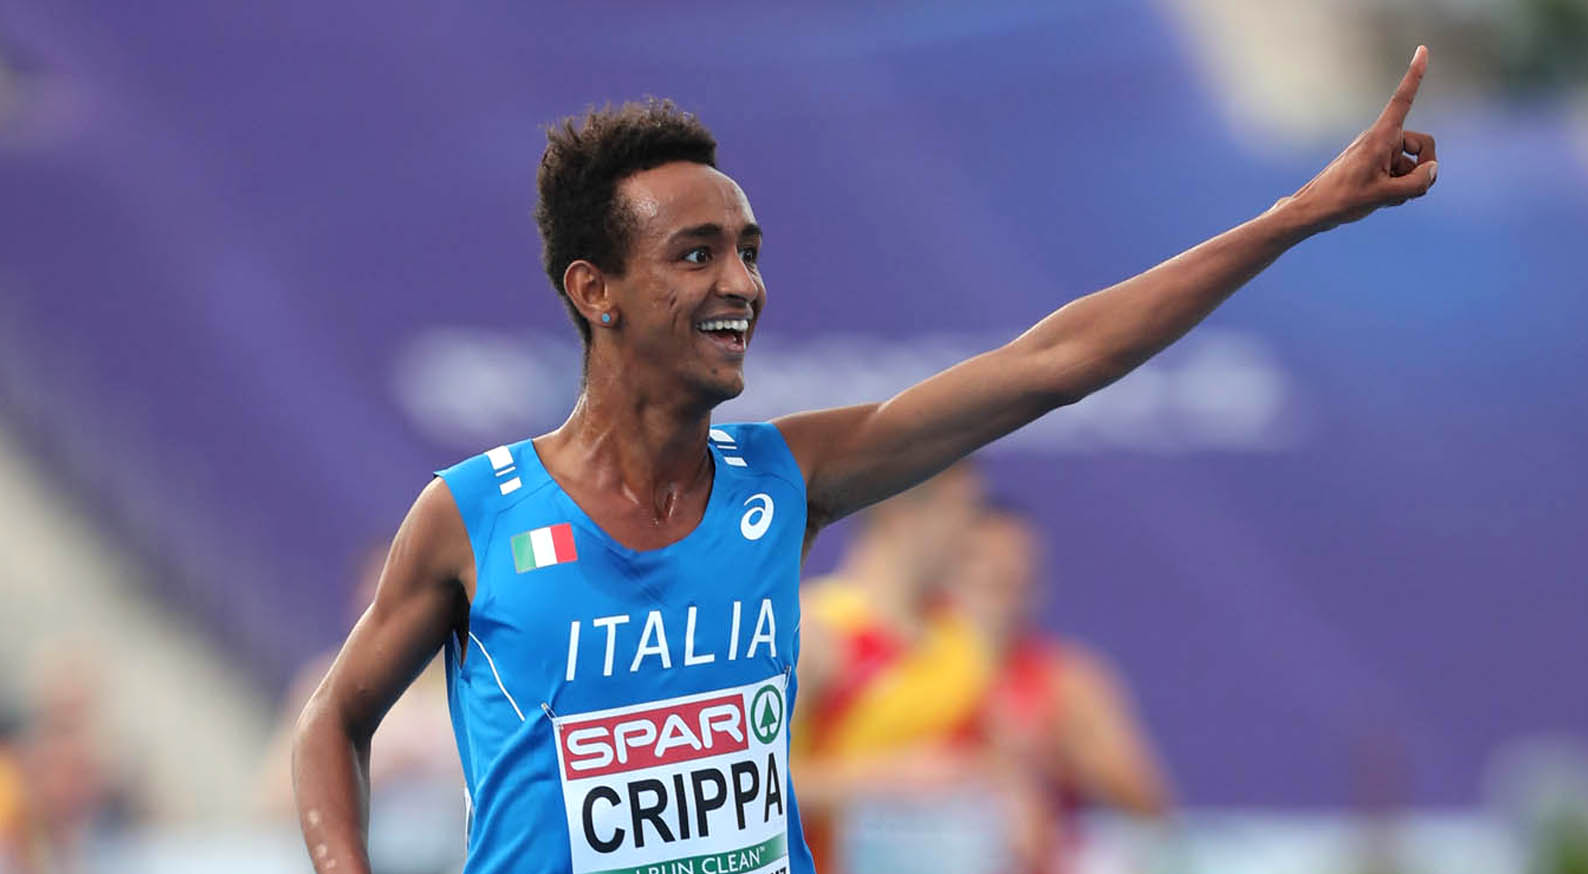 Yeman Crippa firma l'impresa a Ostrava: record italiano sui 5 mila metri, 30 anni dopo Antibo